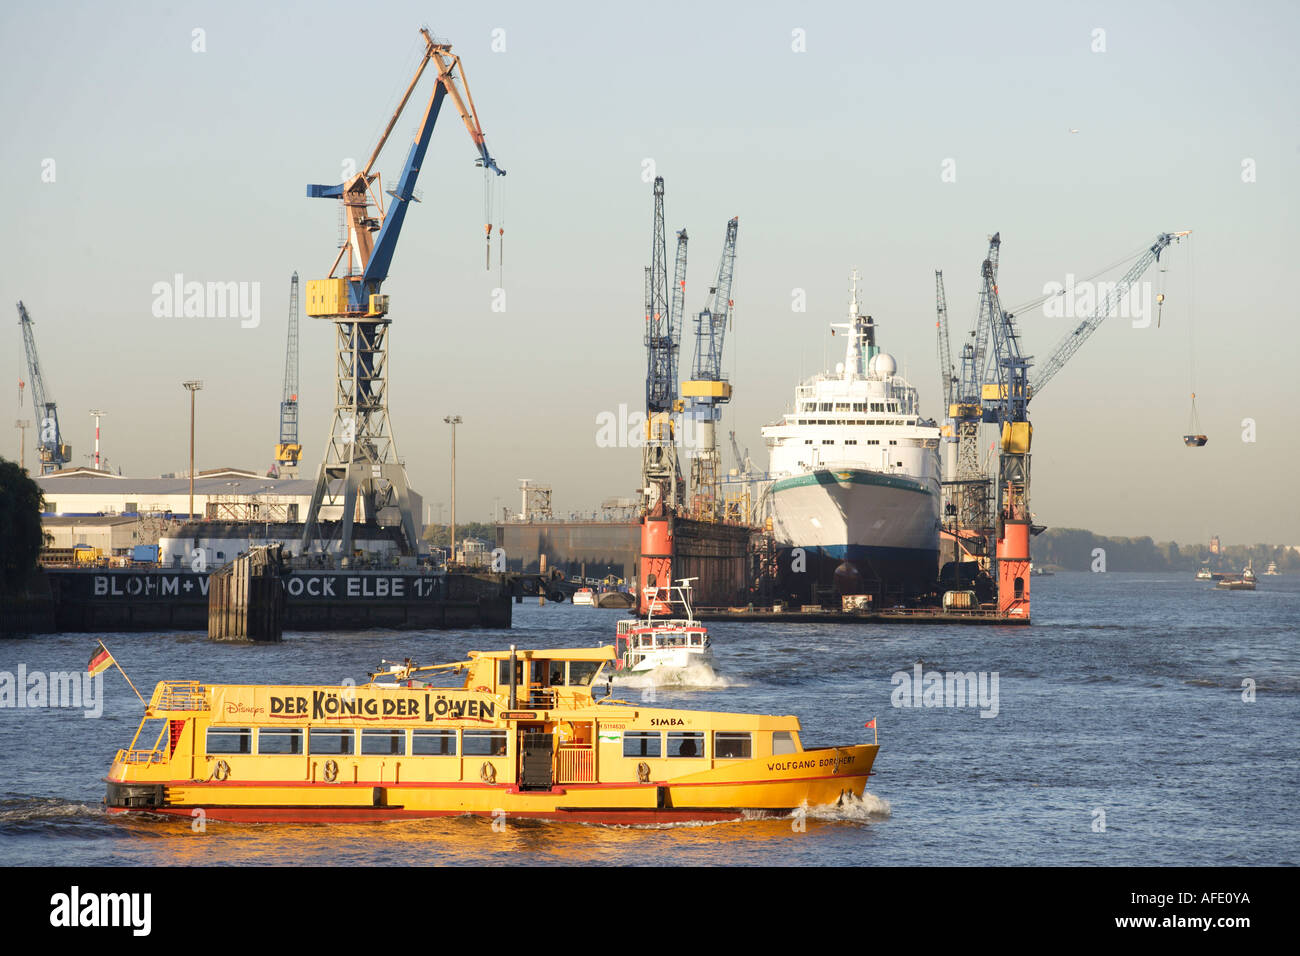 Bateau de croisière MS Albatros, chantier Blohm et Voss, barge sur Elbe, port, port, Hambourg Banque D'Images